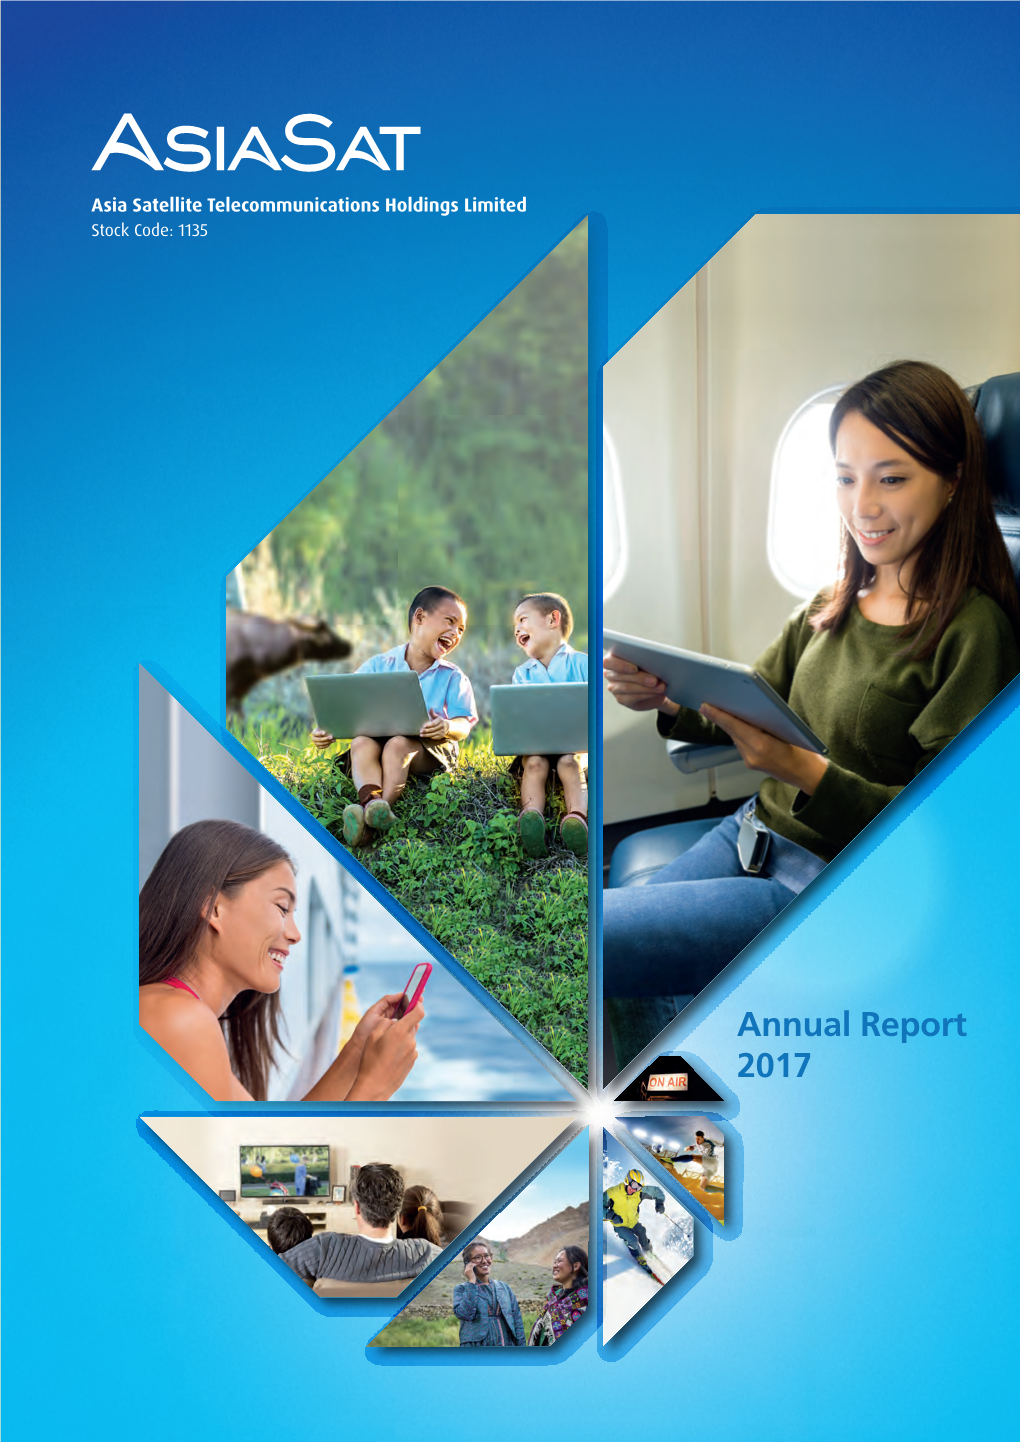 Annual Report 2017 2017 ANNUAL REPORT2017 ANNUAL OUR VISION